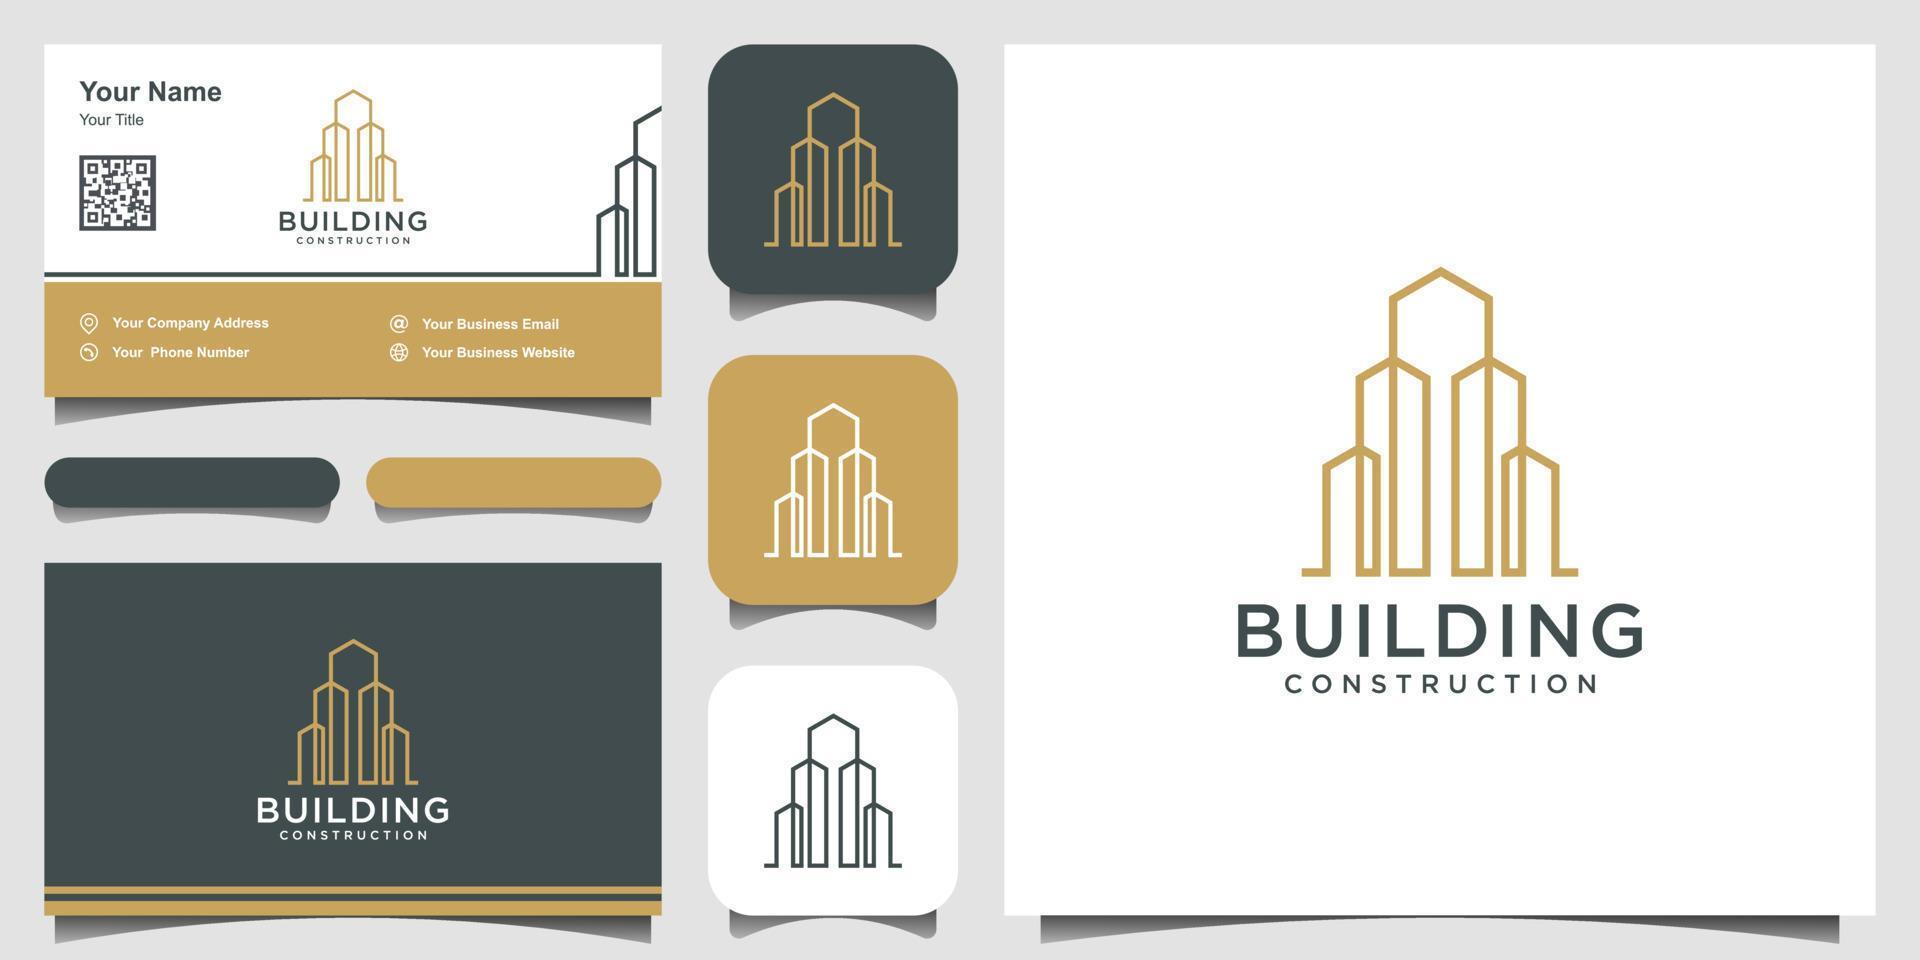 gebouw logo ontwerp met lijn concept. stadsbouwsamenvatting voor inspiratie voor logo-ontwerp. logo ontwerp en visitekaartje vector